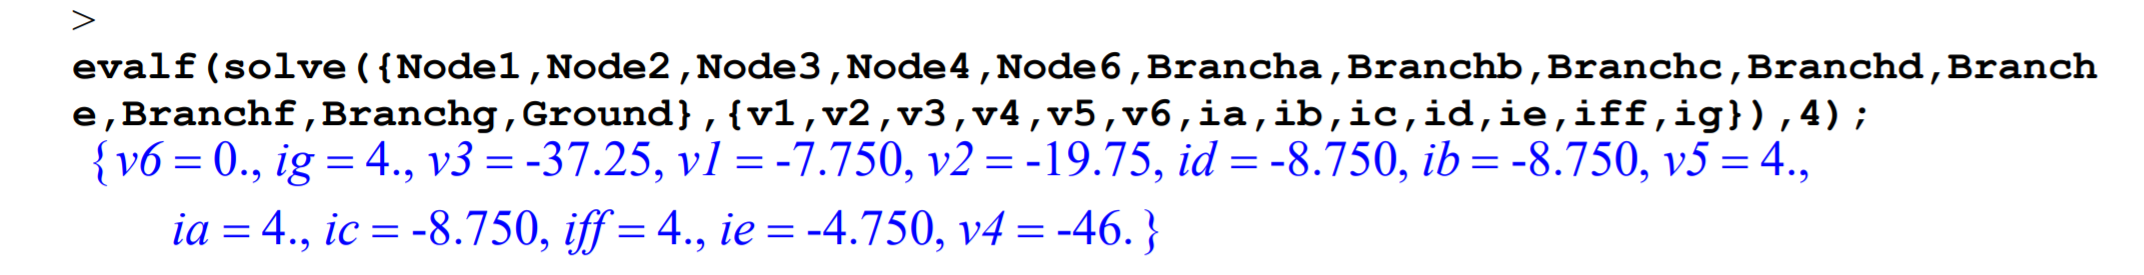 Código para resolver para todos los voltajes de nodo y corrientes de ramificación a partir de las ecuaciones establecidas anteriormente, utilizando las ecuaciones para los nodos 1, 2, 3, 4 y 6, y los valores numéricos devueltos por el programa para cada una de estas variables.